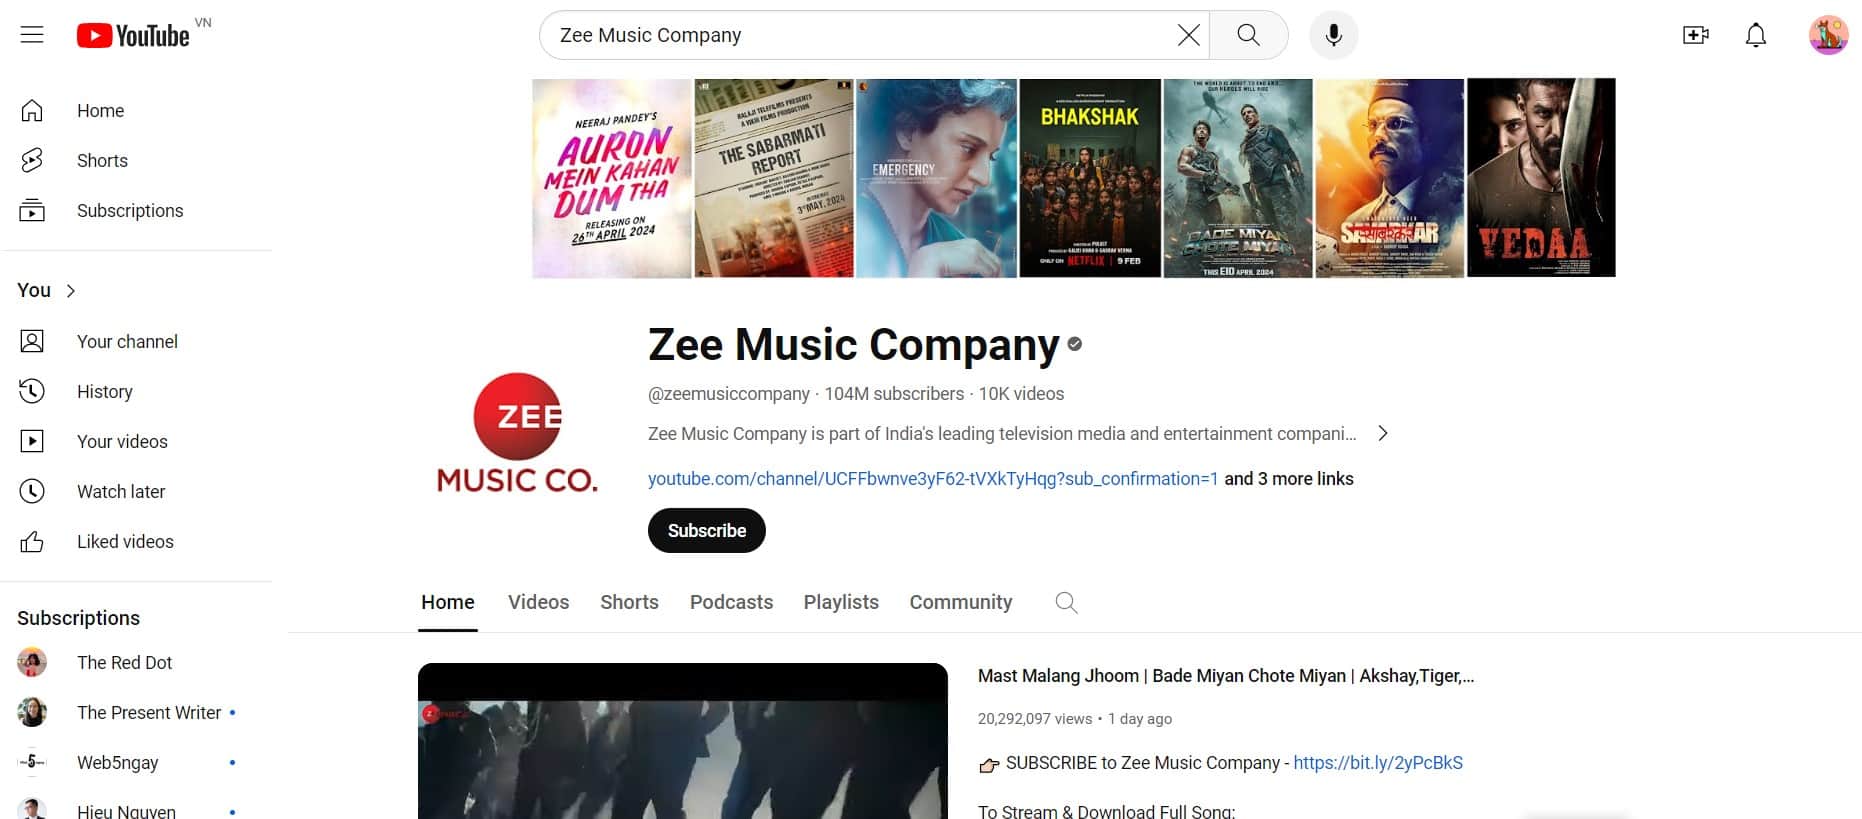 Kênh Zee Music Company có 104 triệu lượt subcribes - Một con số khủng bao Youtuber ao ước